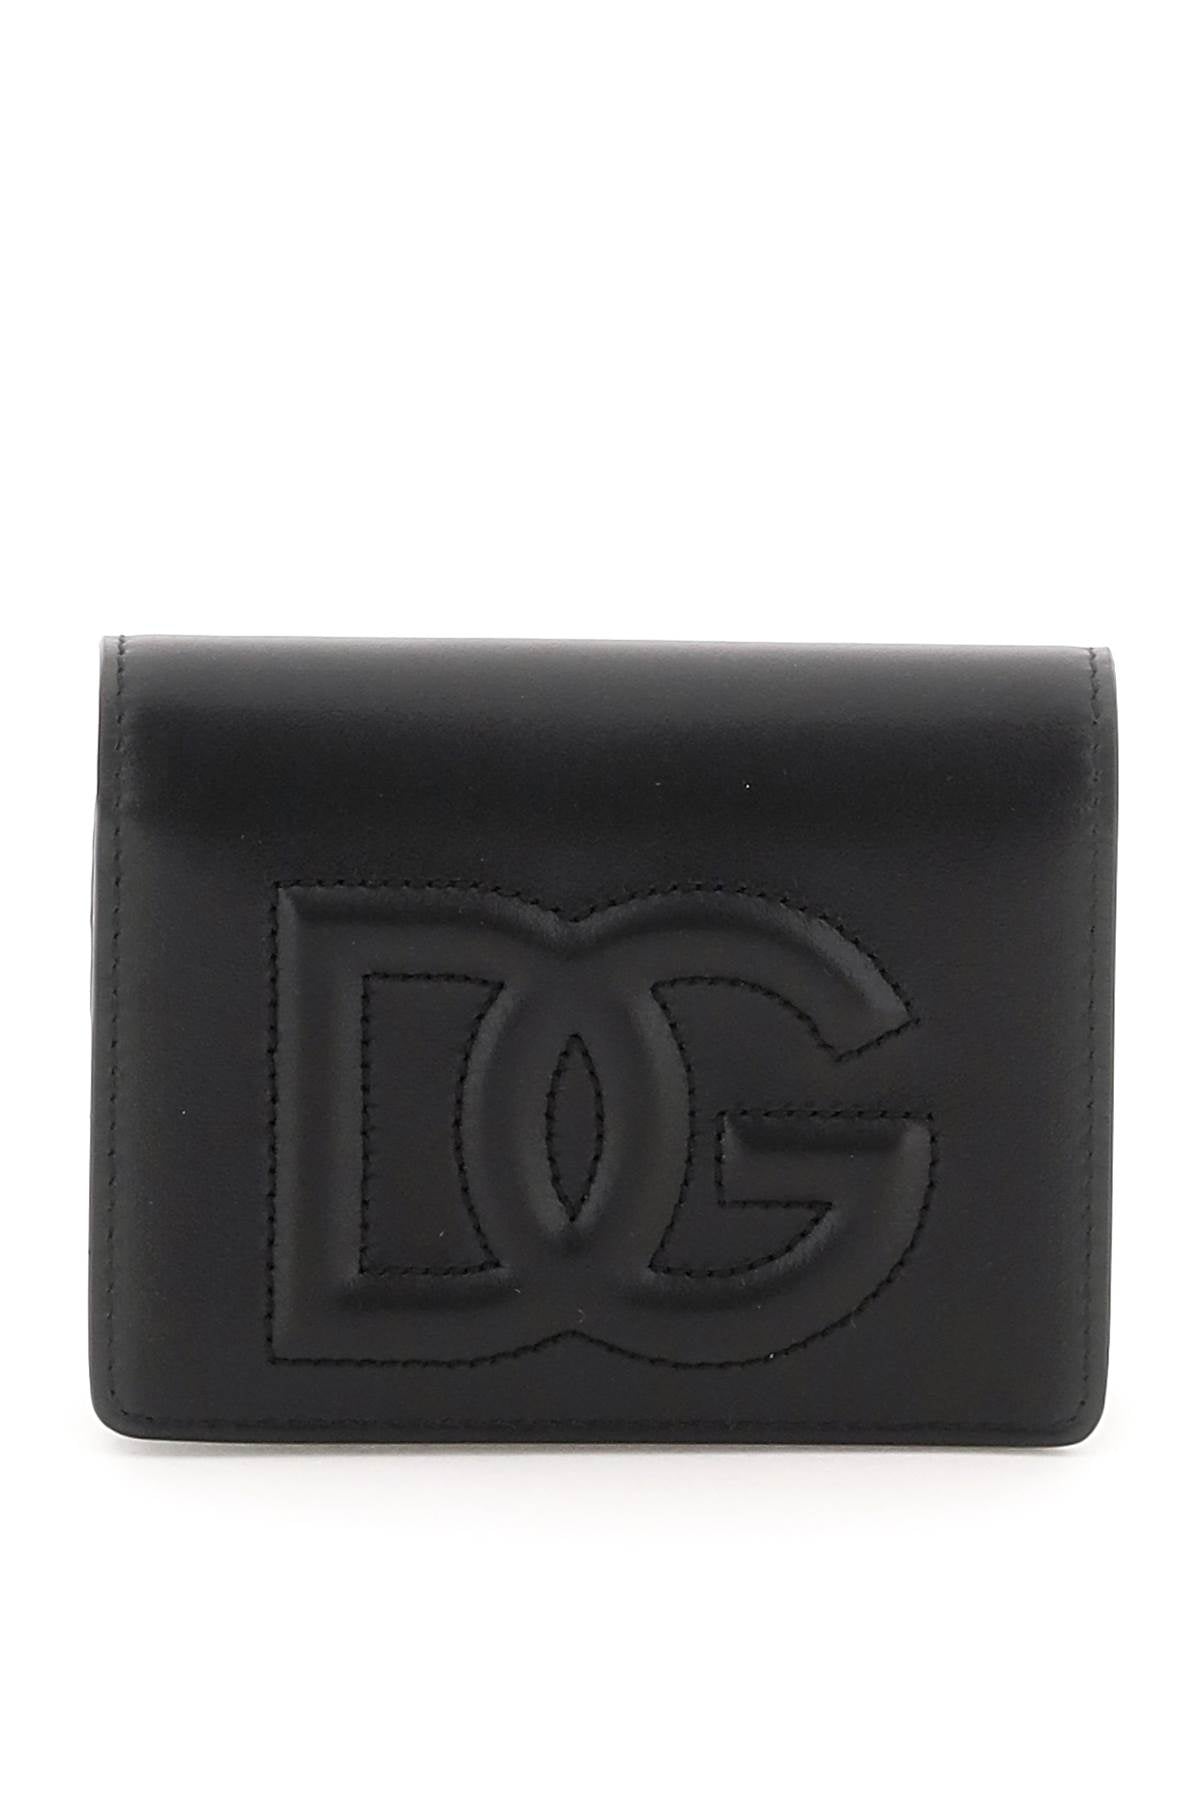 Dolce & Gabbana Dolce & gabbana dg logo wallet